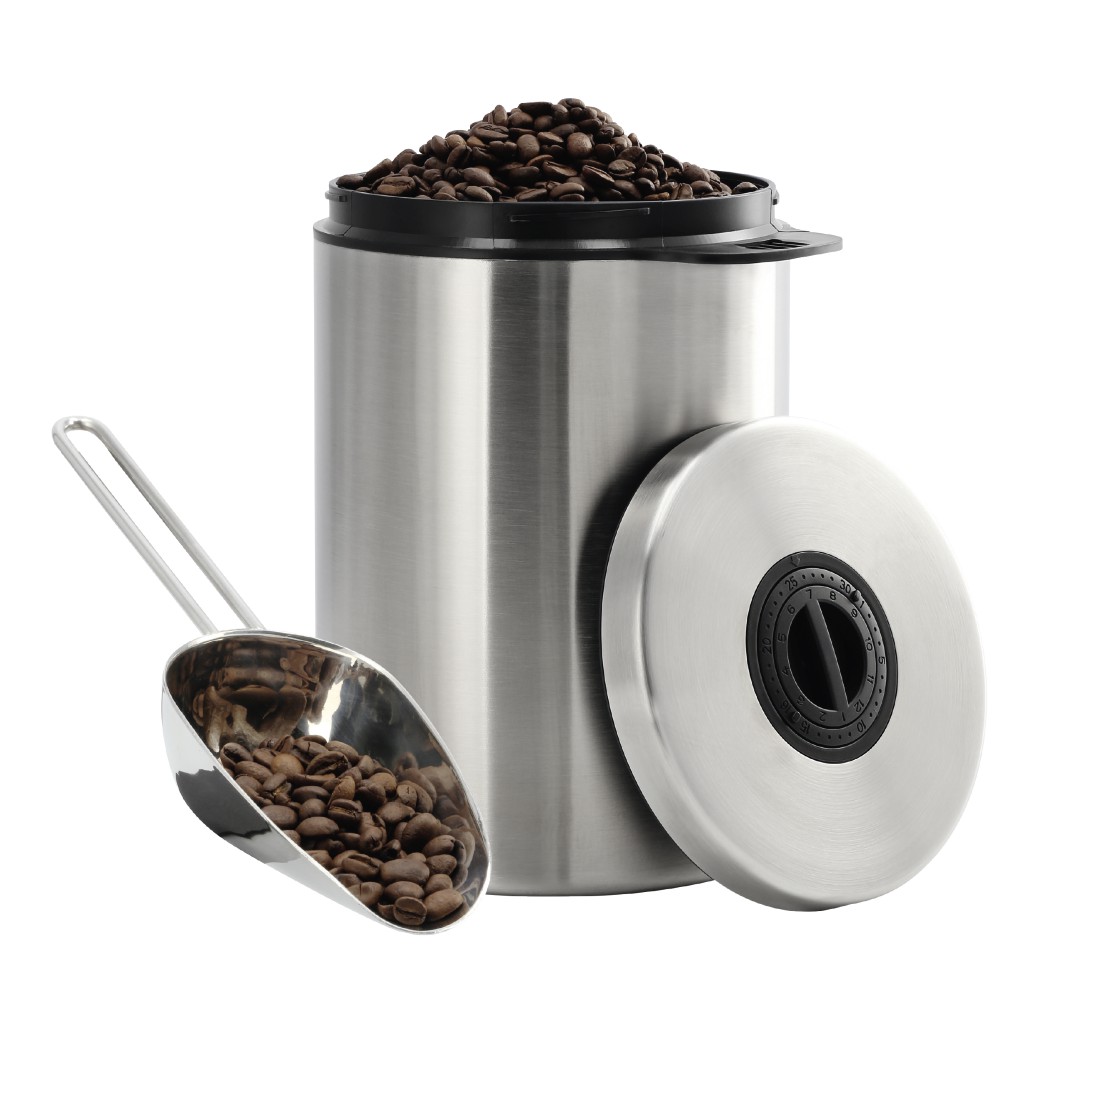 abx Druckfähige Abbildung - Xavax, Edelstahldose für 1 kg Kaffeebohnen, mit Schaufel